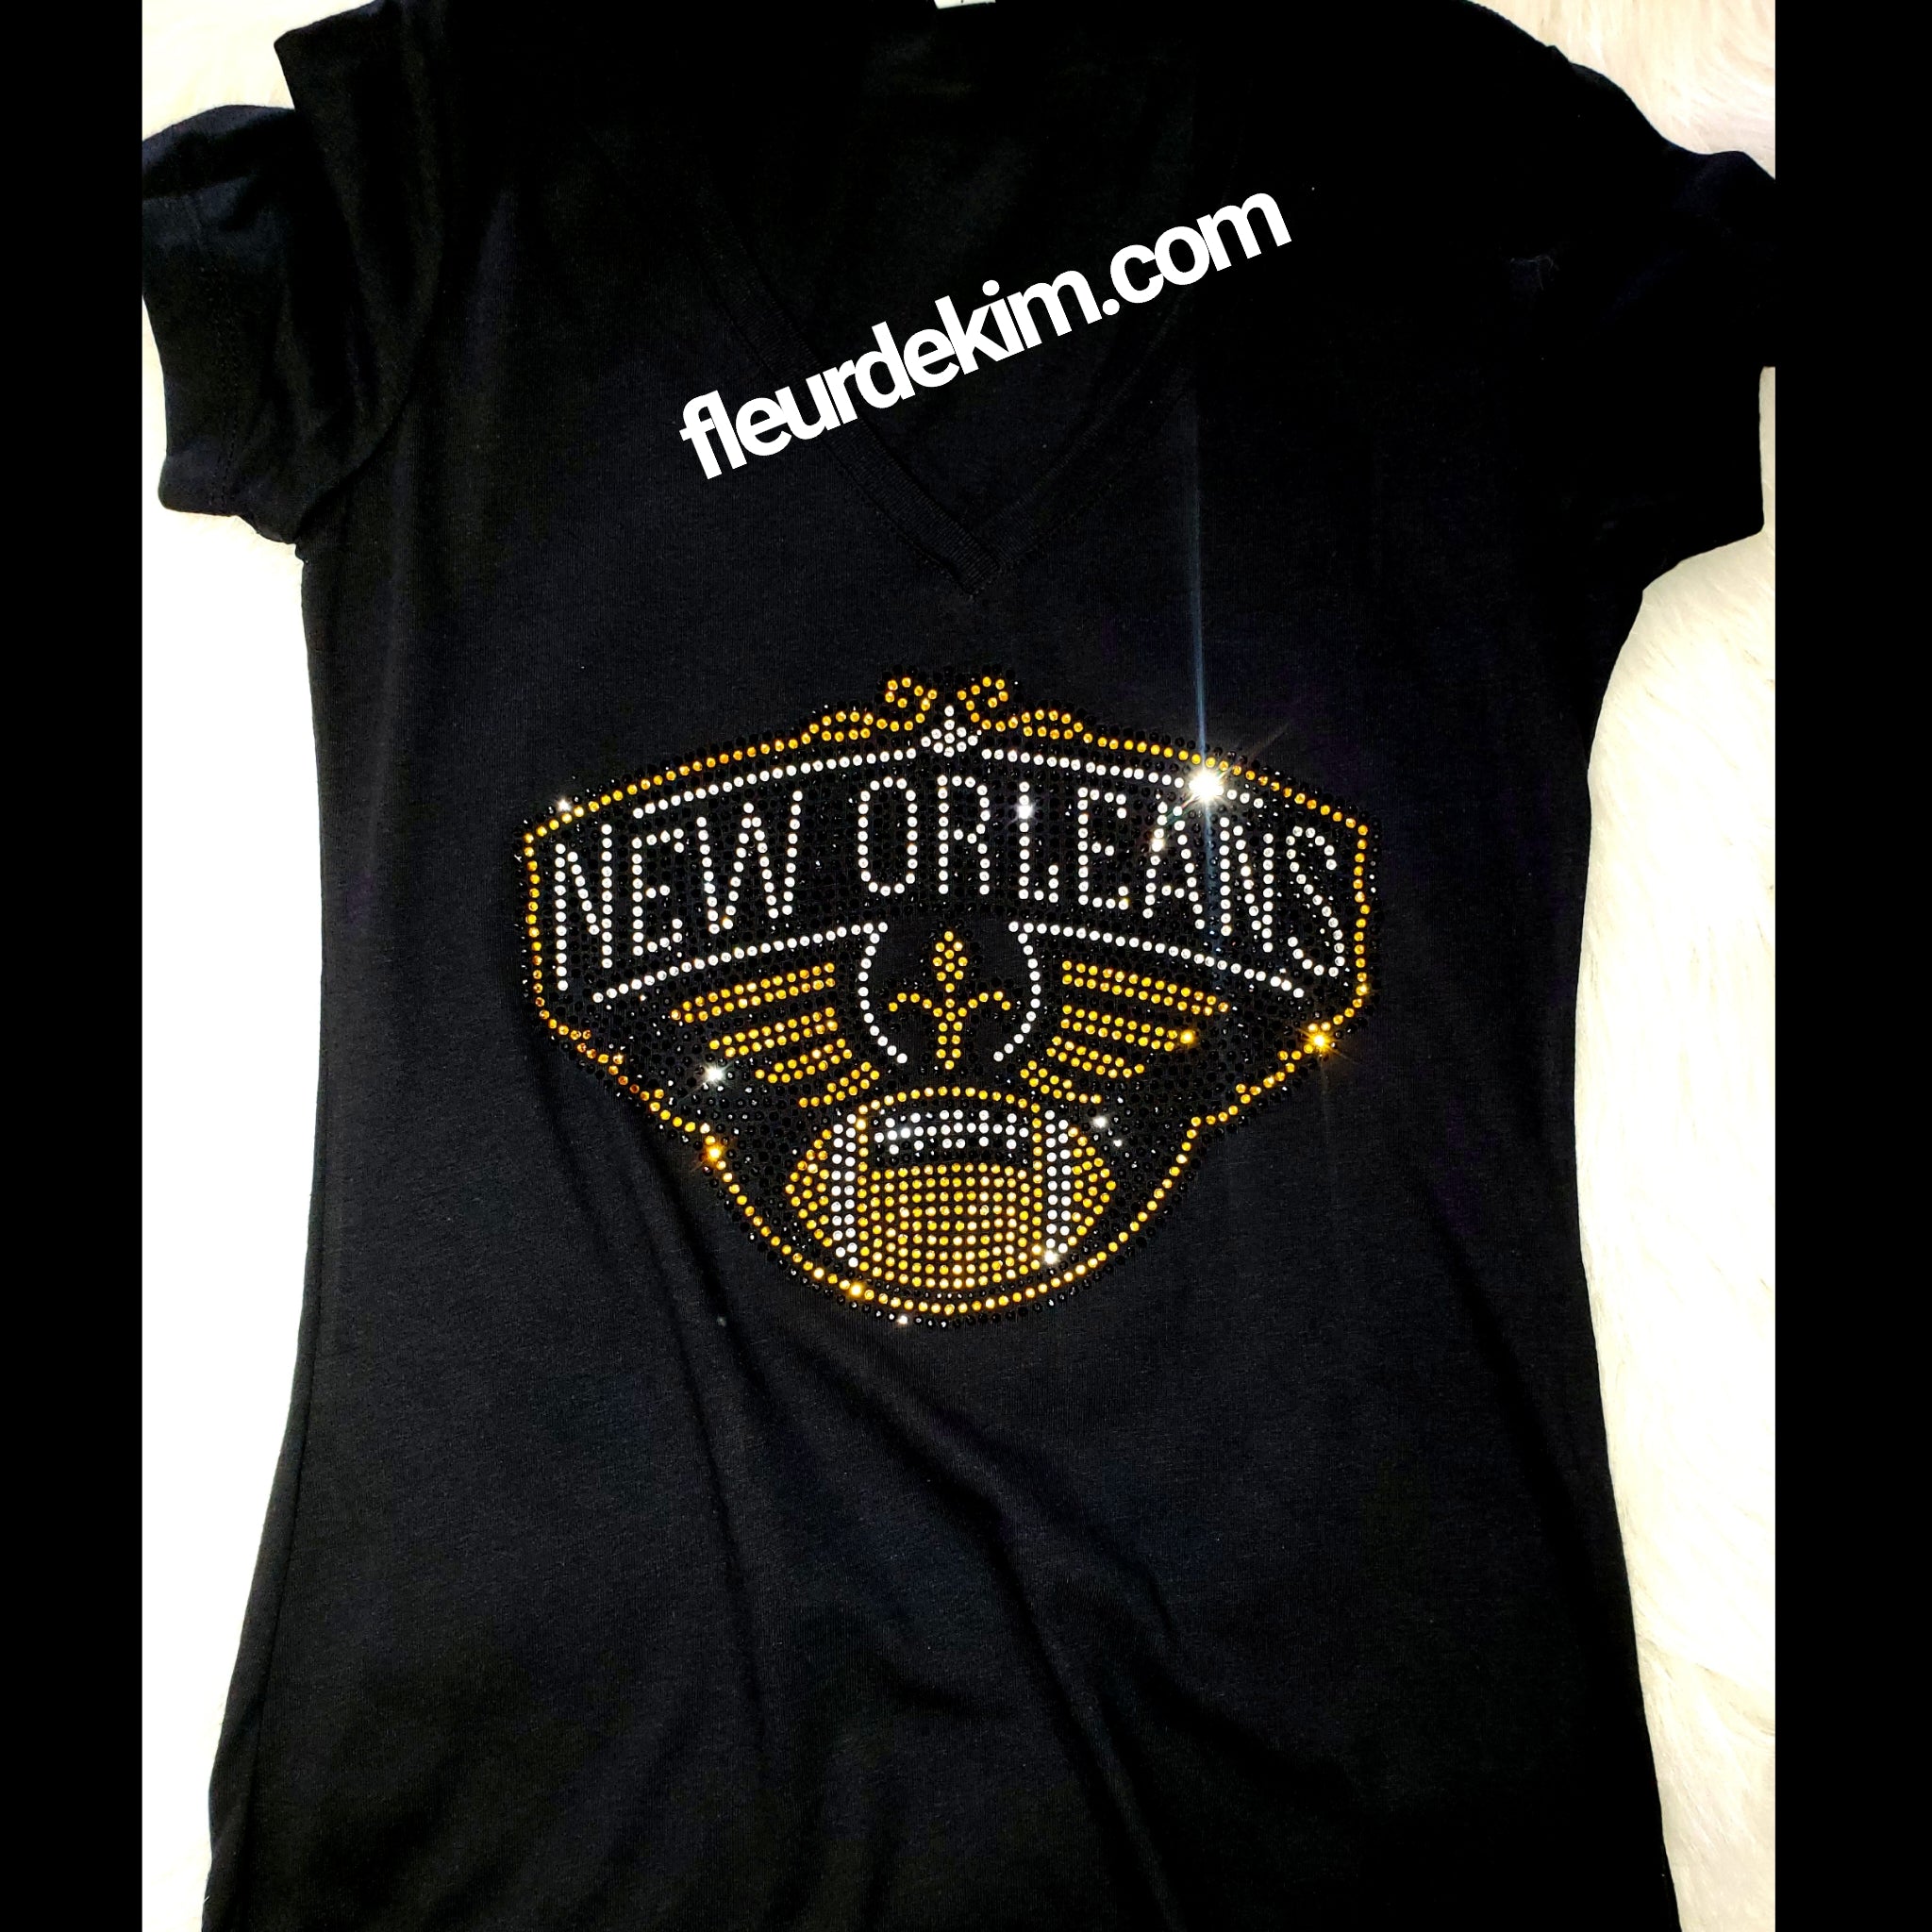 Bling rhinestone tshirt New Orleans